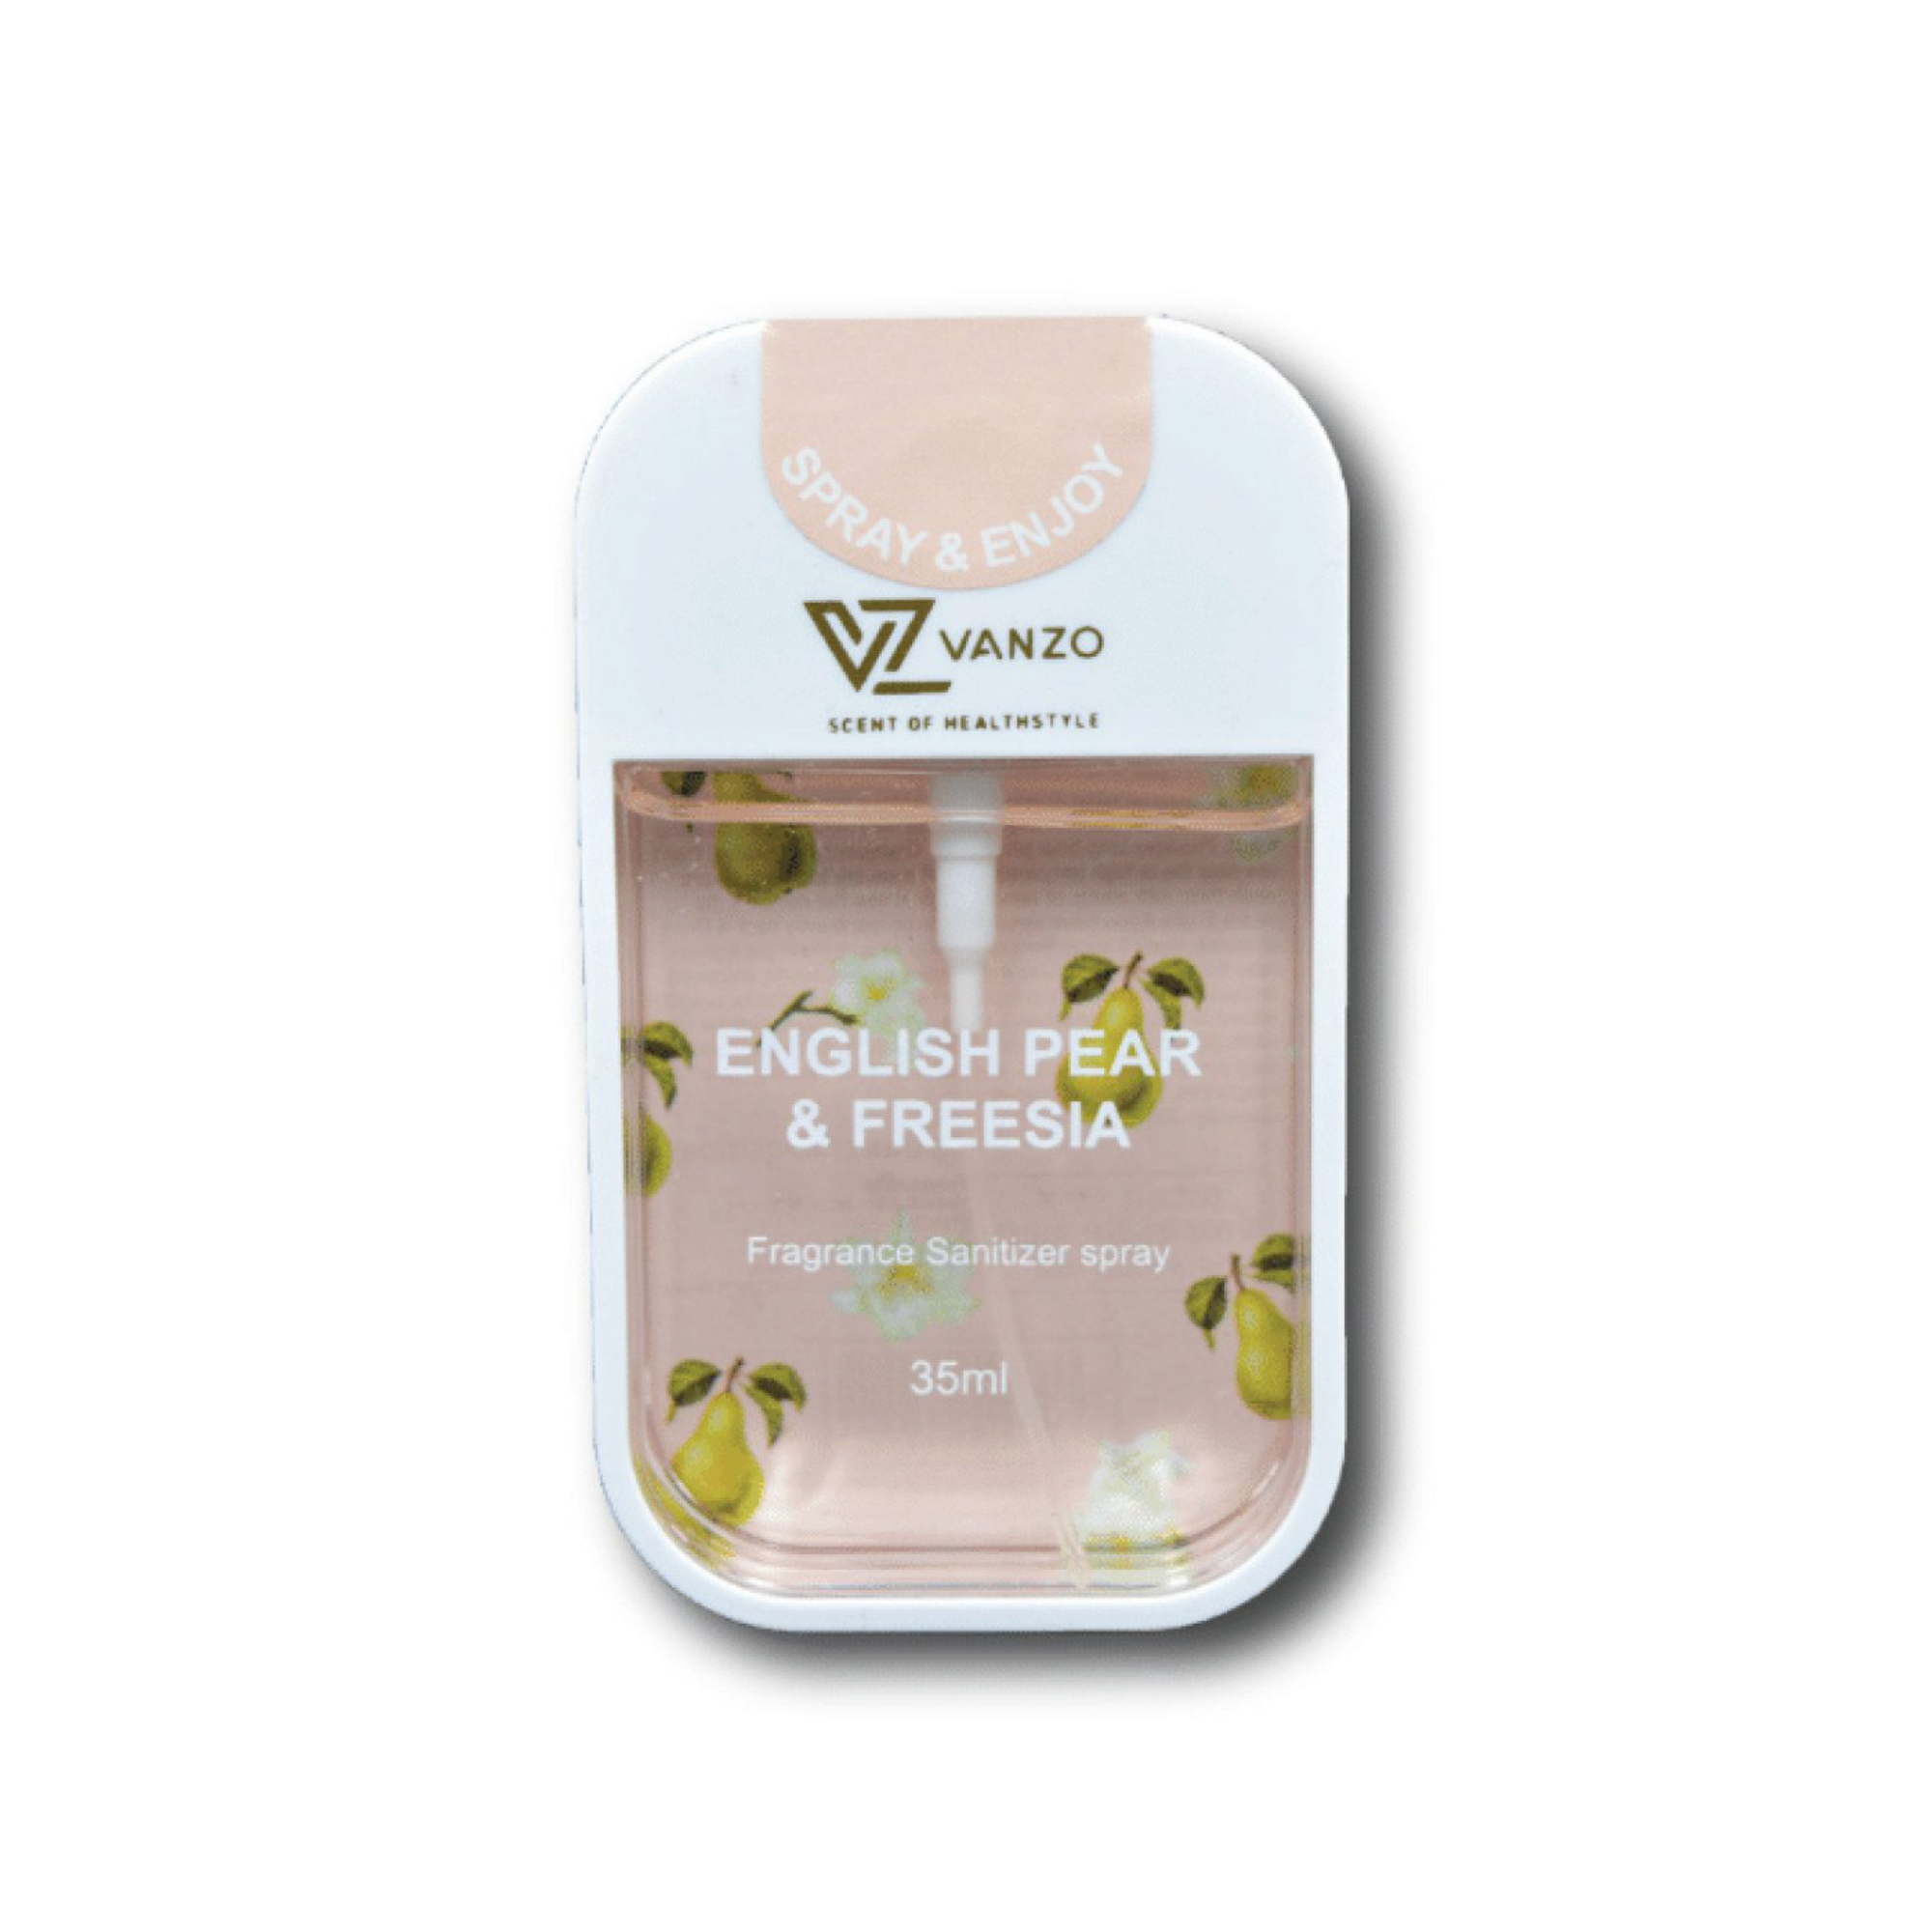 VANZO Pocket Fragrance Sanitizer Spray 35ml ã€English Pear & Freesiaã€‘